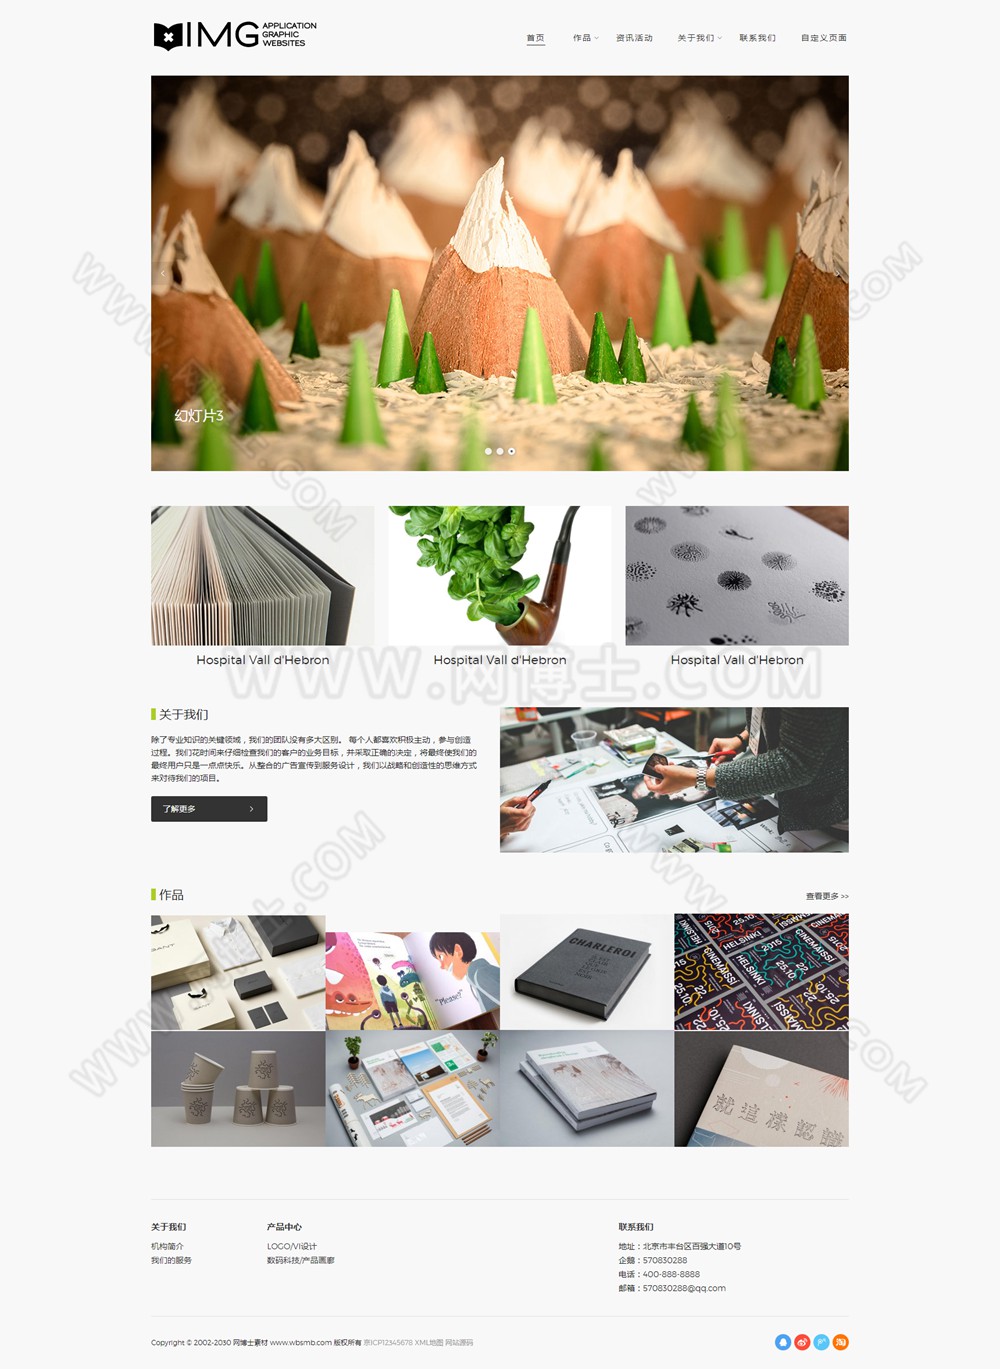 (自适应手机版)响应式高端轻型摄影相册杂志织梦网站模板 HTML5简约风格画册设计类